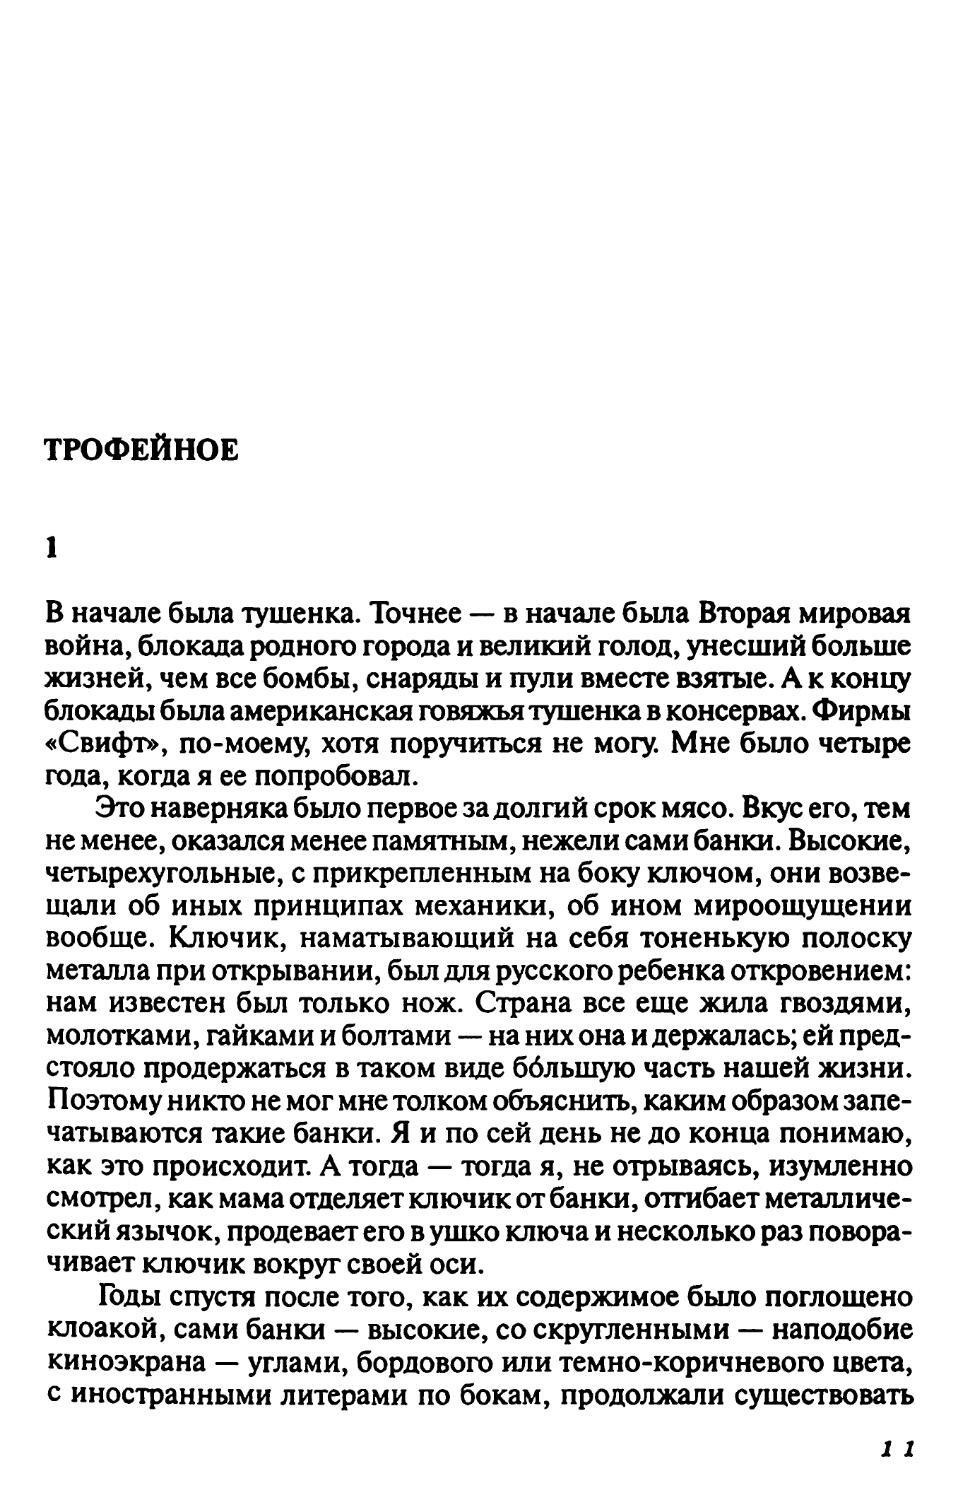 Трофейное. Авторизованный перевод Л. Сумеркина